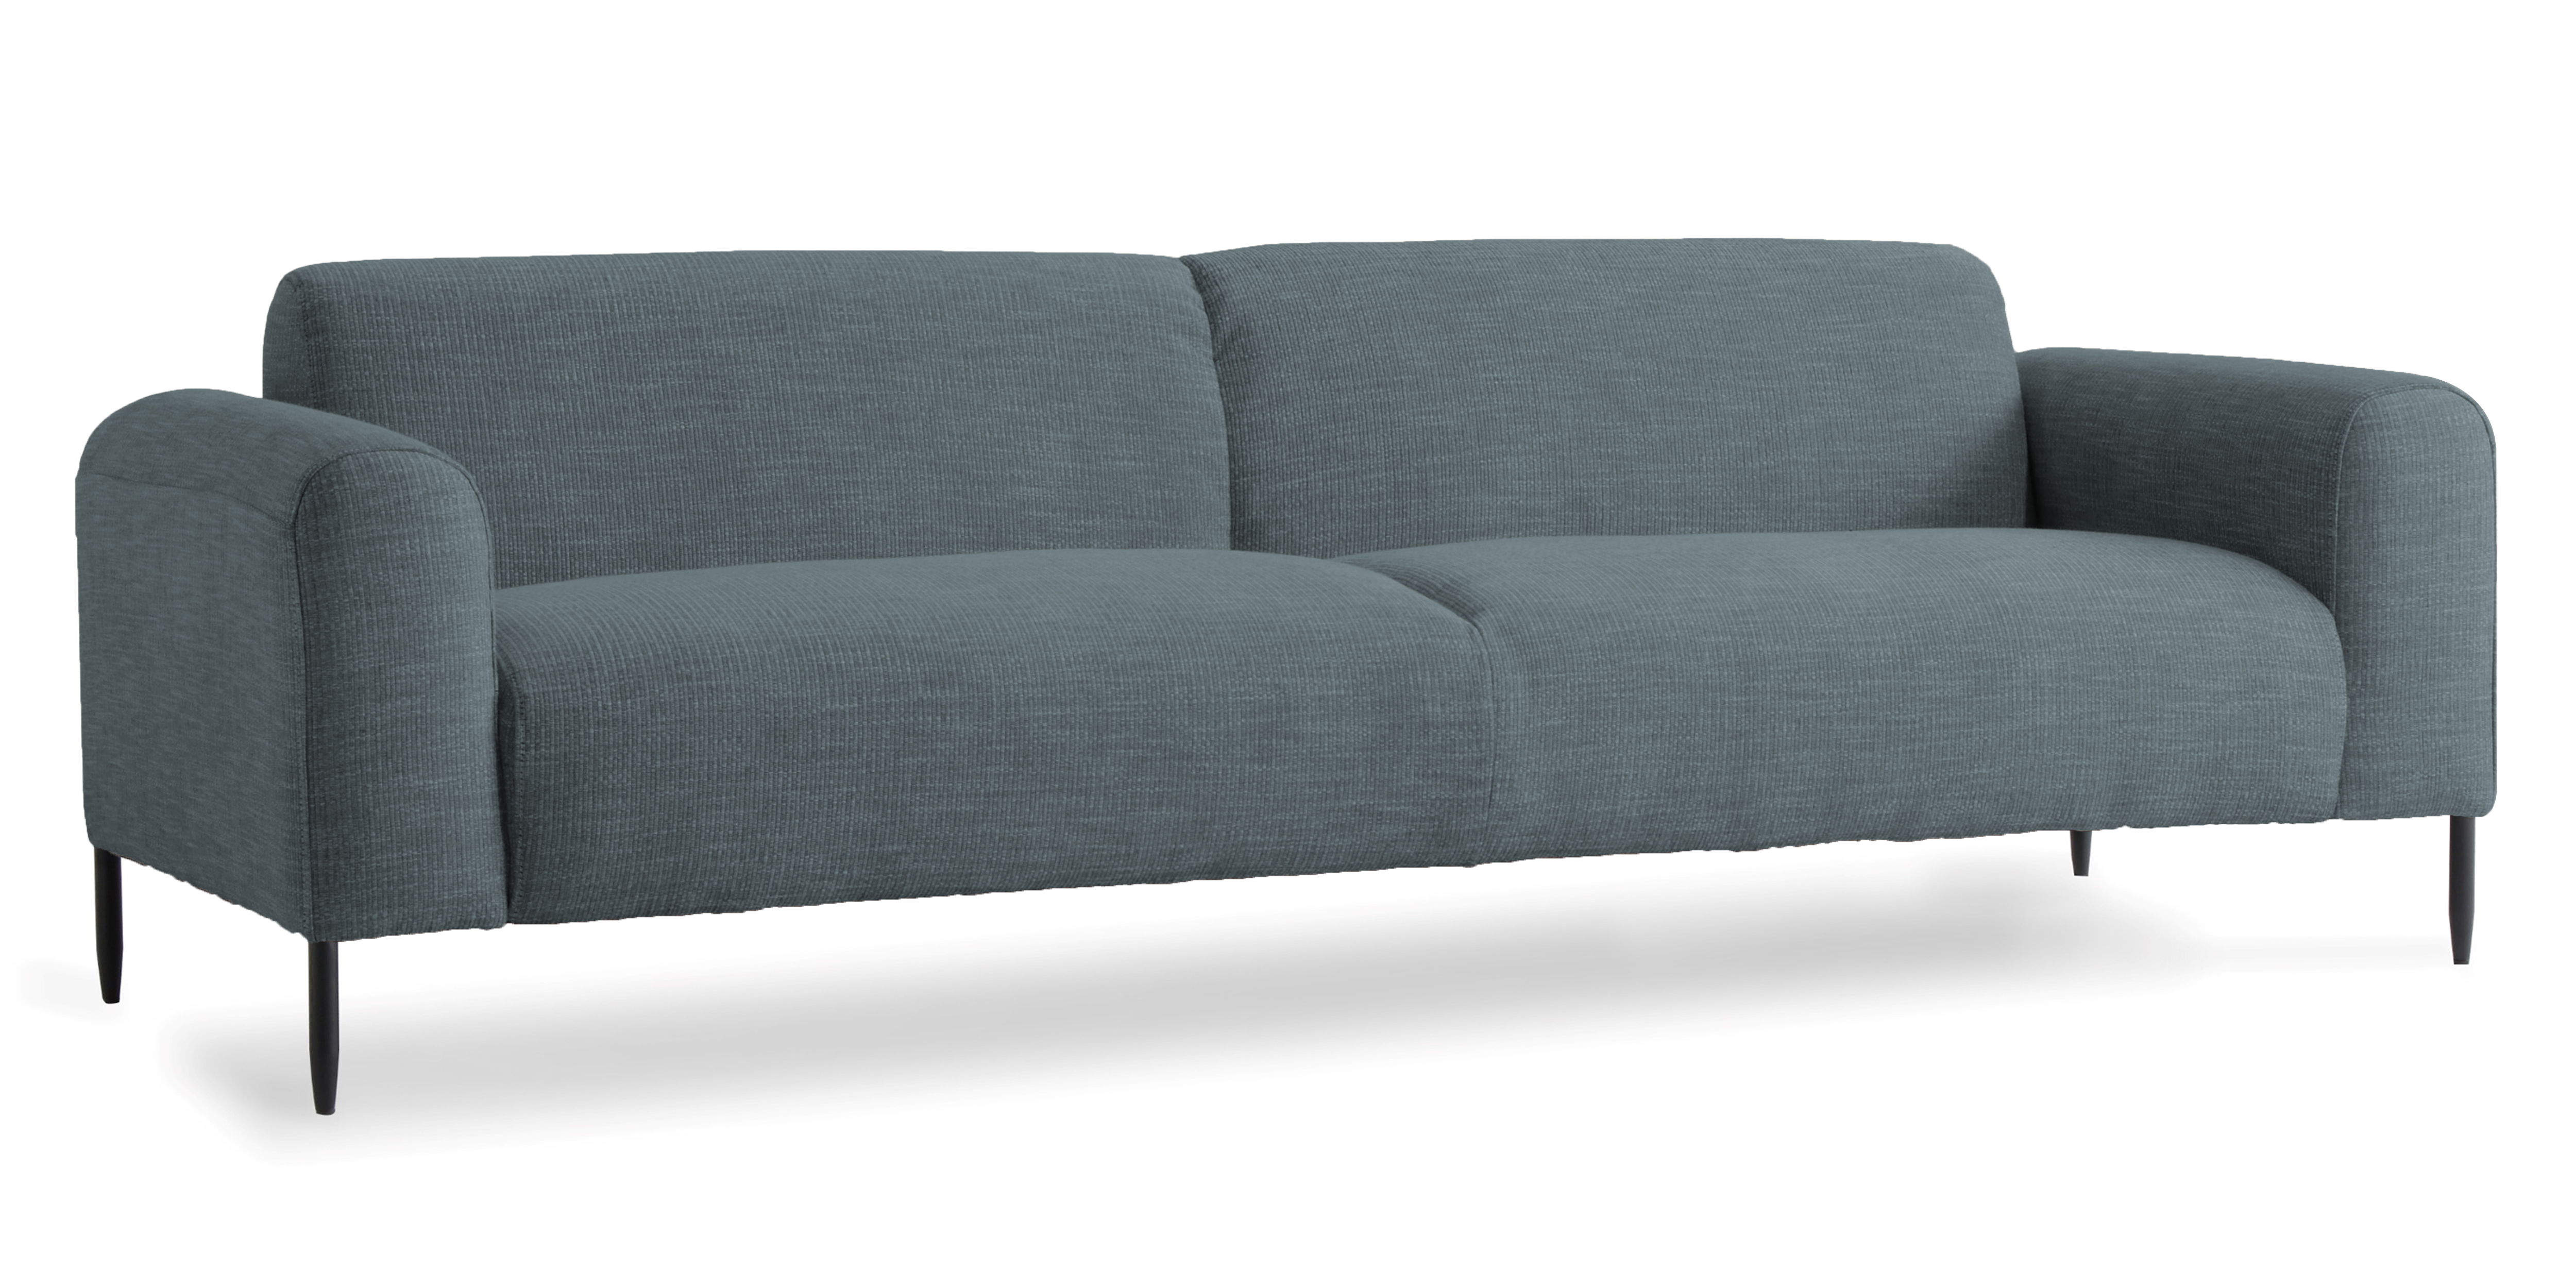 WS - District 2 seater sofa - Era CSE44 ELAPSE